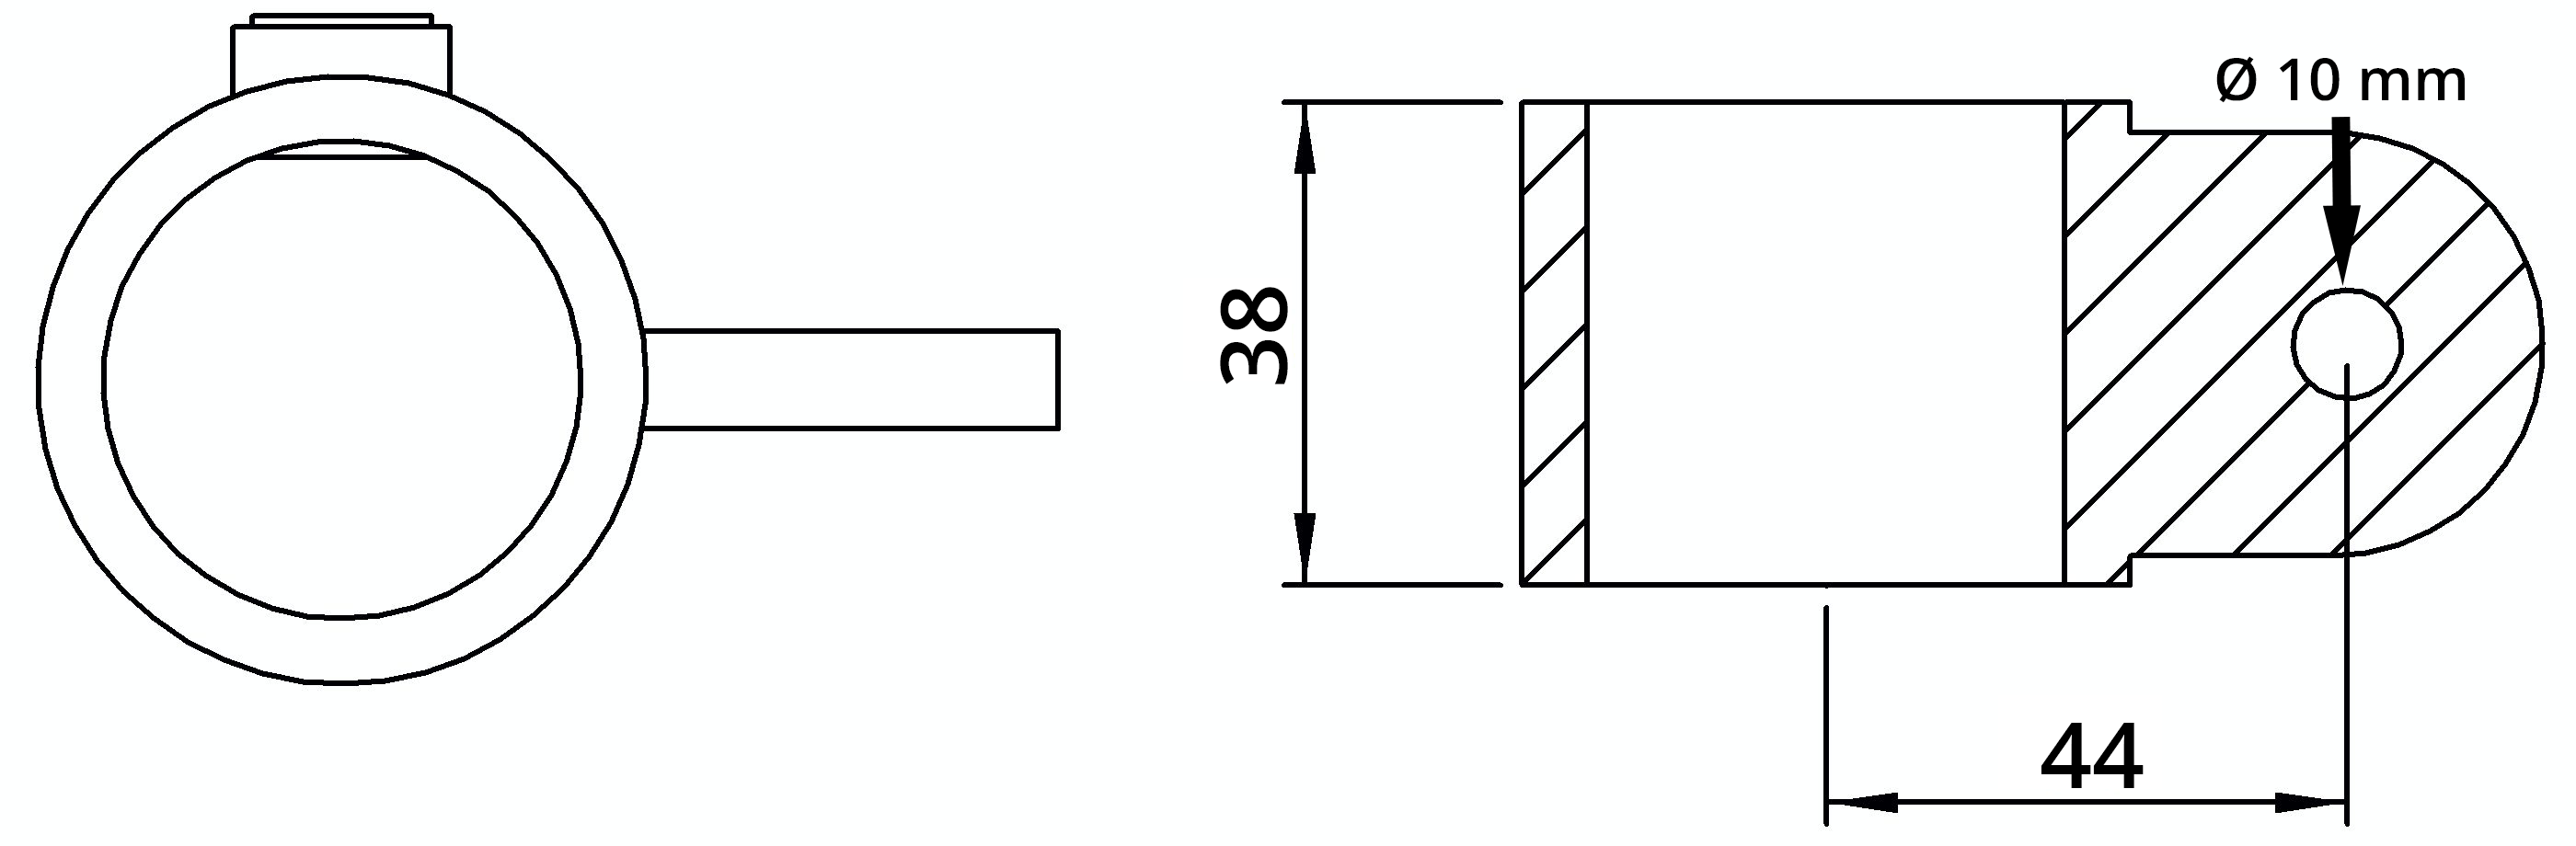 Rohrverbinder | Gelenkauge einfach | 173MB34 | 33,7 mm | 1" | Feuerverzinkt u. Elektrogalvanisiert